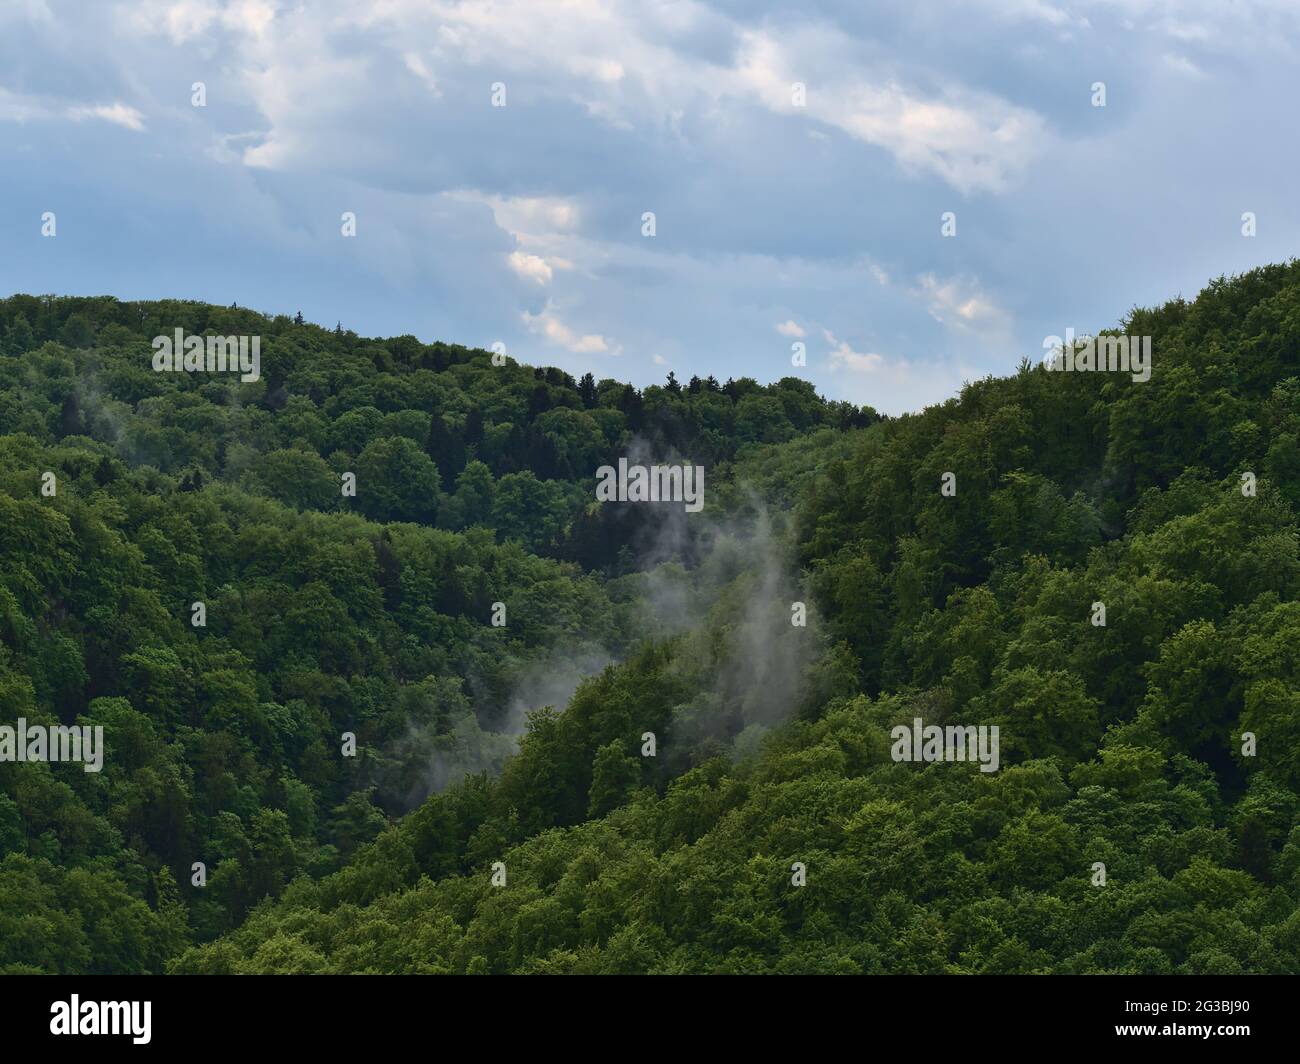 Paysage forestier avec air humide et brouillard montant après de fortes pluies d'été dans les collines de l'Alb souabe près de Lichtenstein, Allemagne avec des arbres verts. Banque D'Images